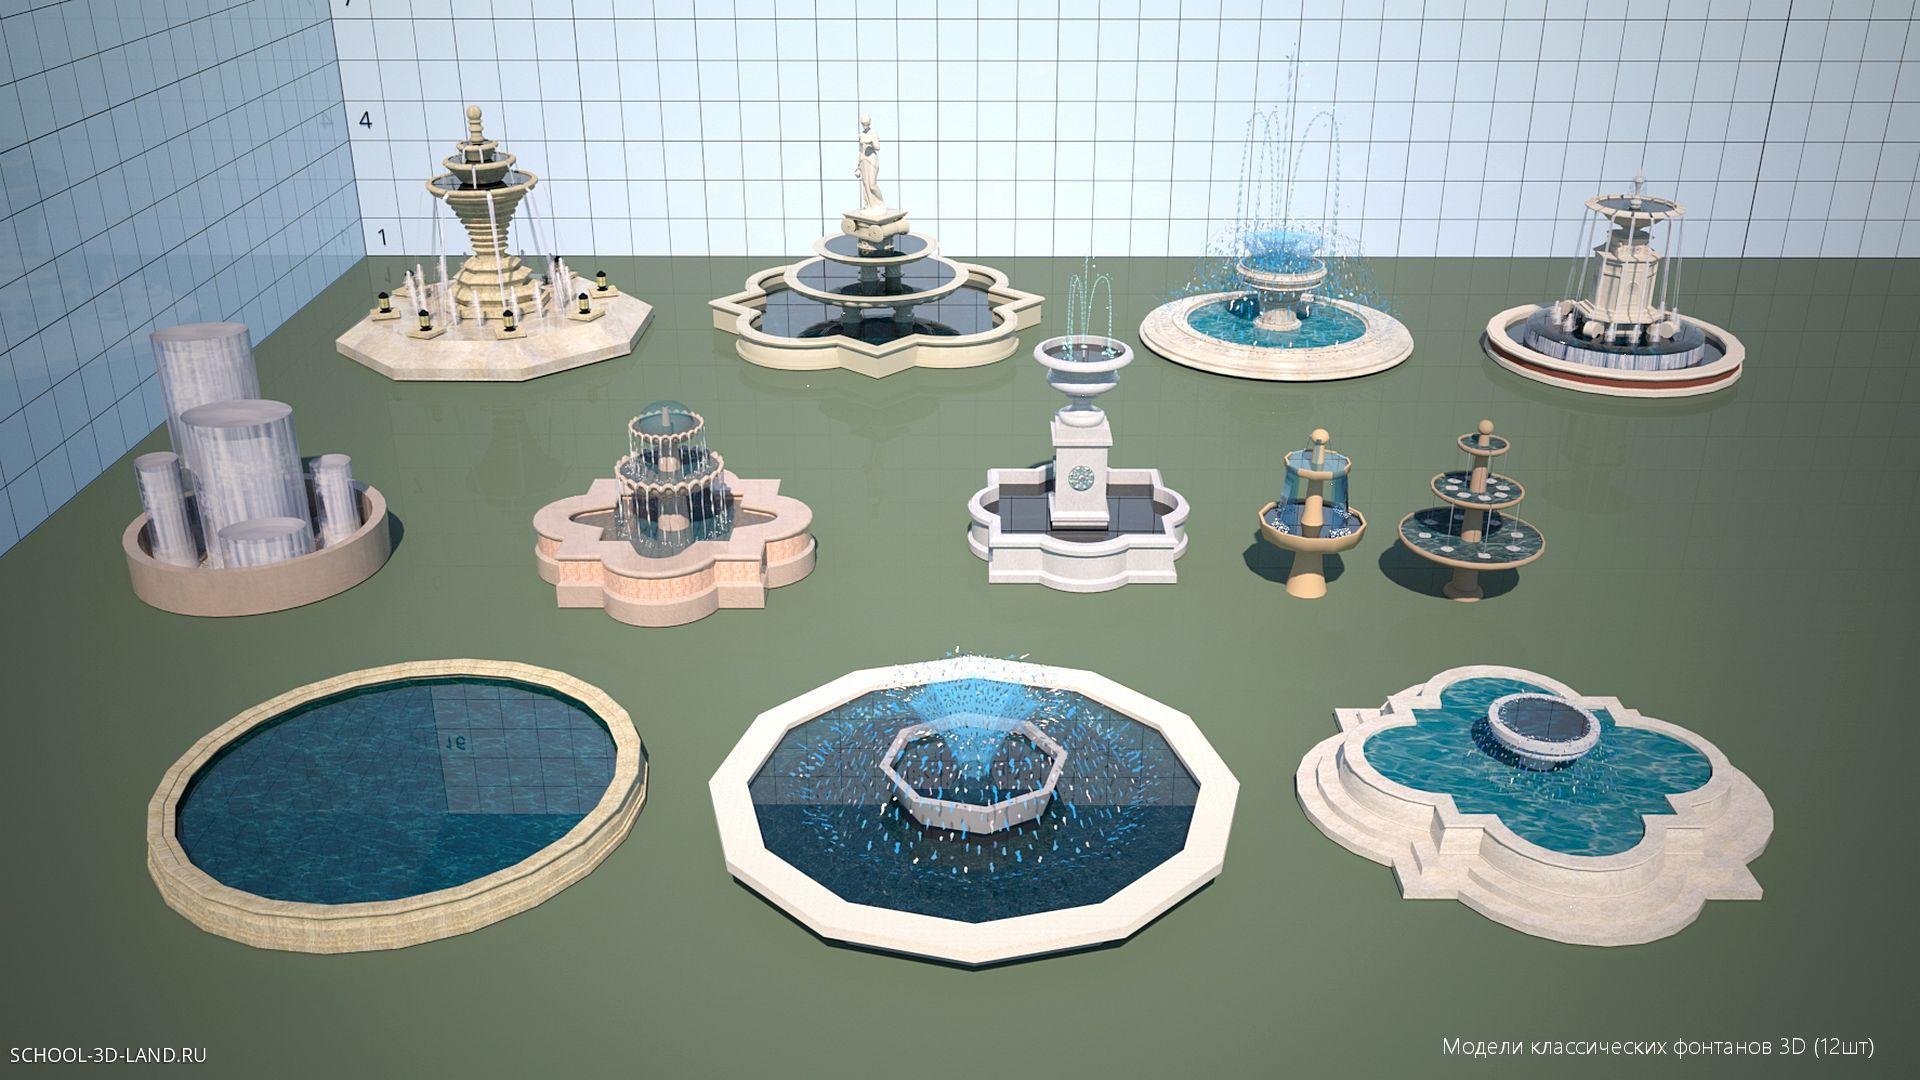 Модели классических фонтанов 3D (12шт)